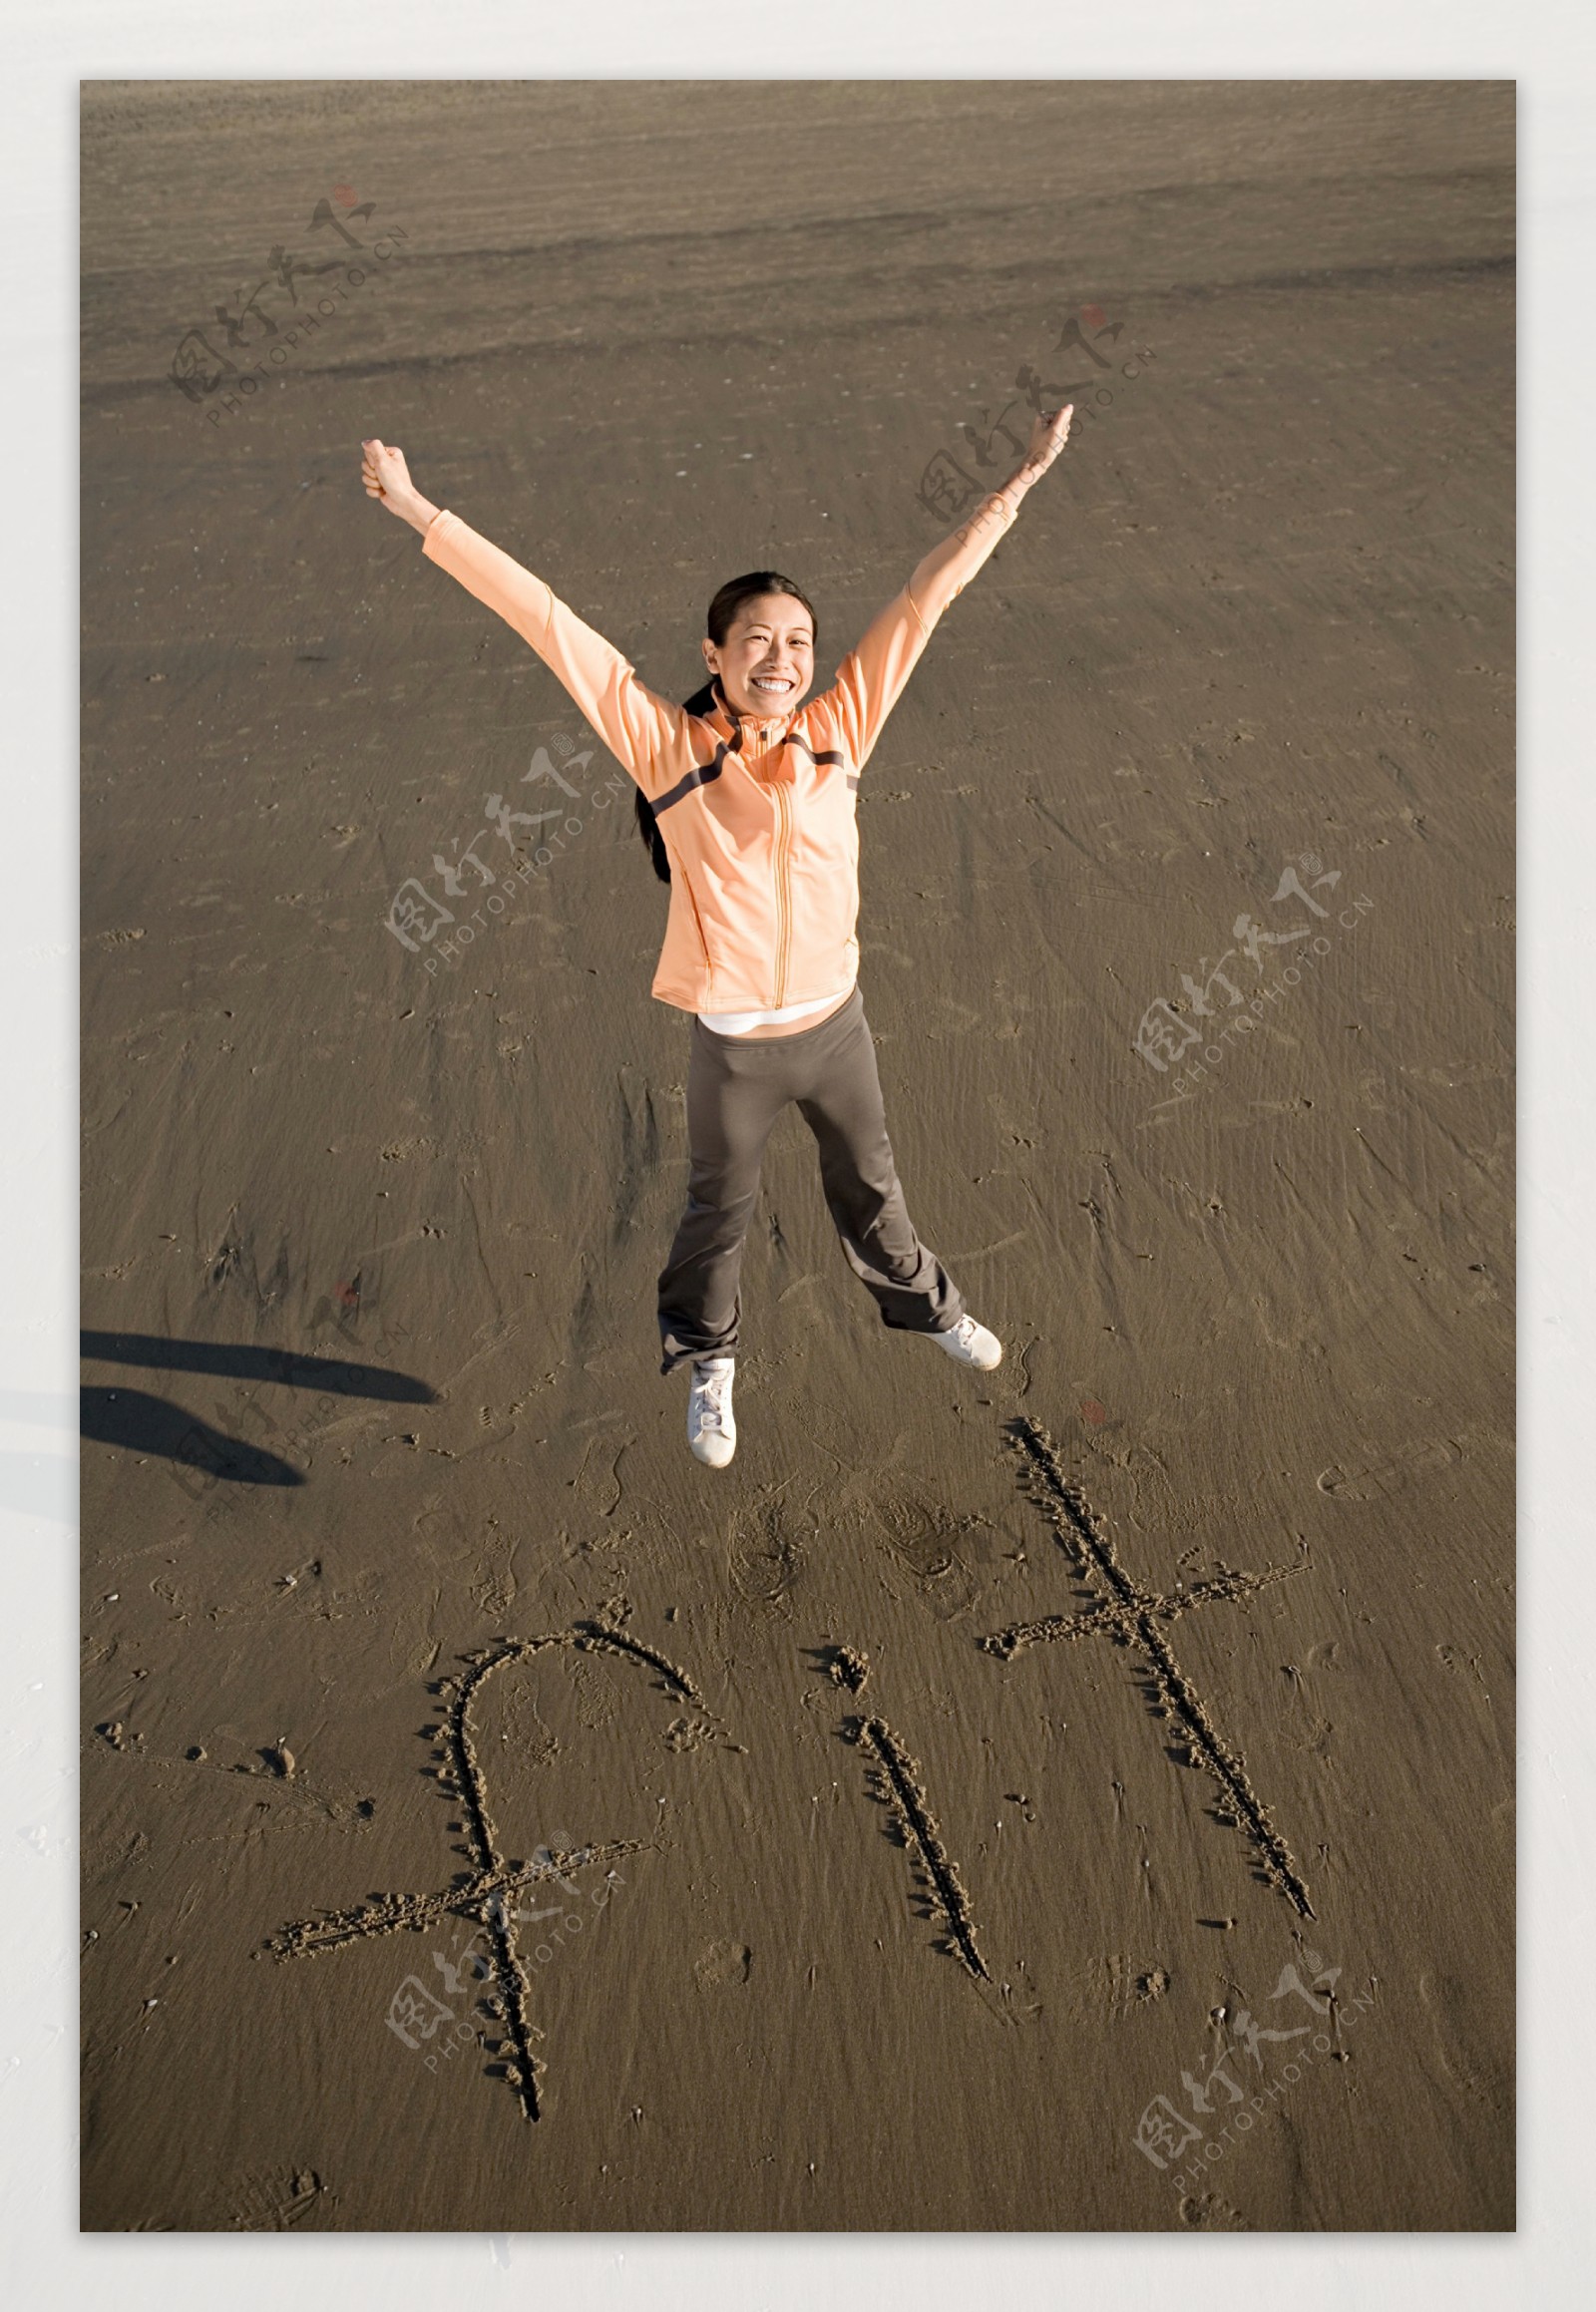 沙滩上跳跃的人物摄影图片